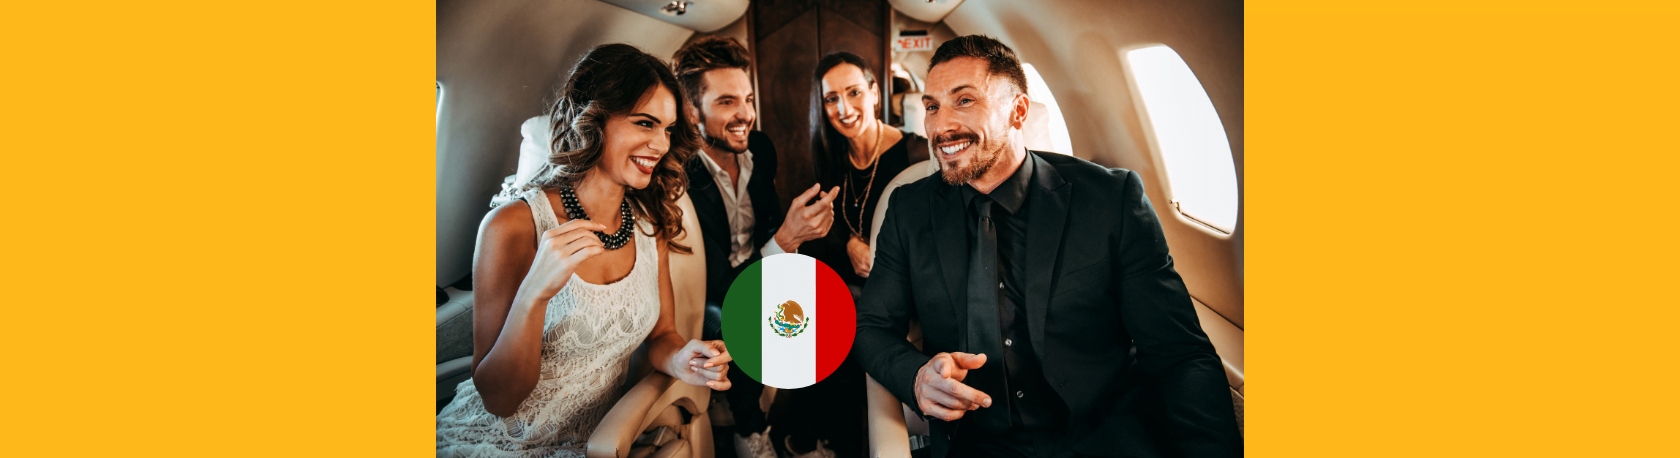 Easy Podcast: Los “mirreyes”, la cara fea de la desigualdad en México - Easy Español